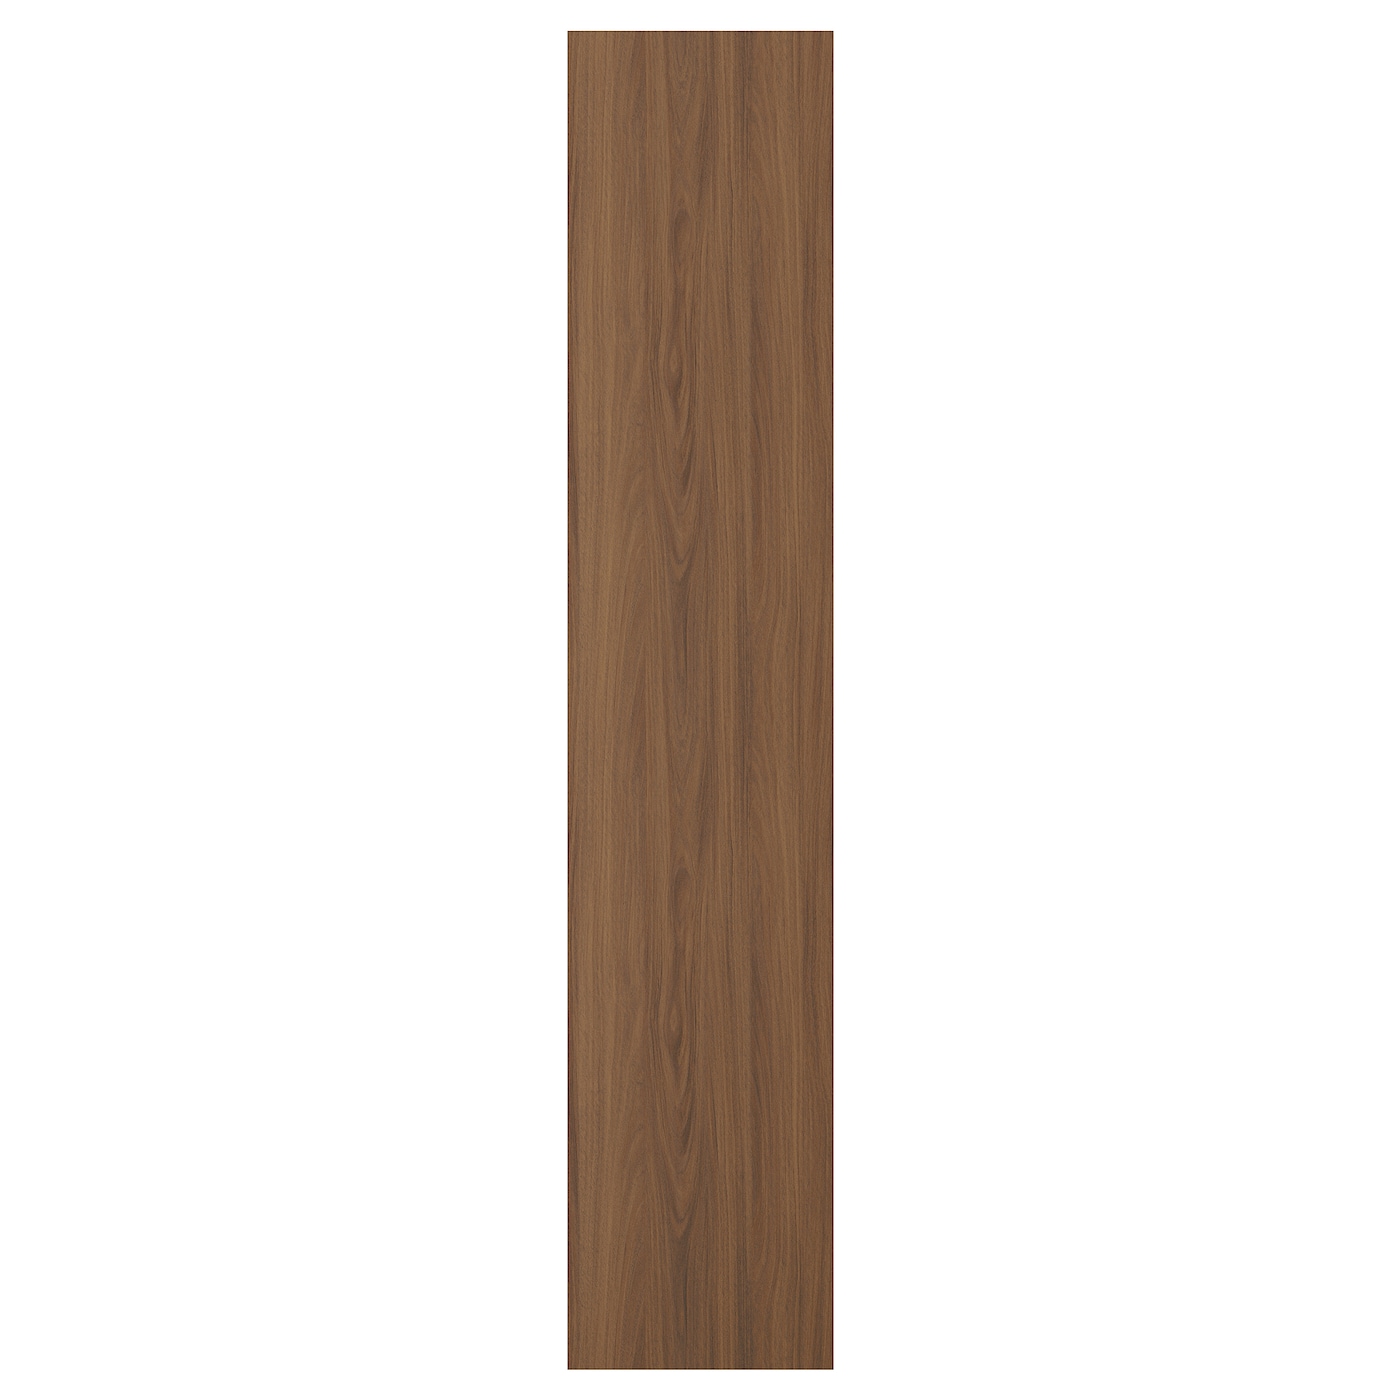 Дверца  - TISTORP IKEA/ ТИСТОРП ИКЕА,  200х40 см, коричневый